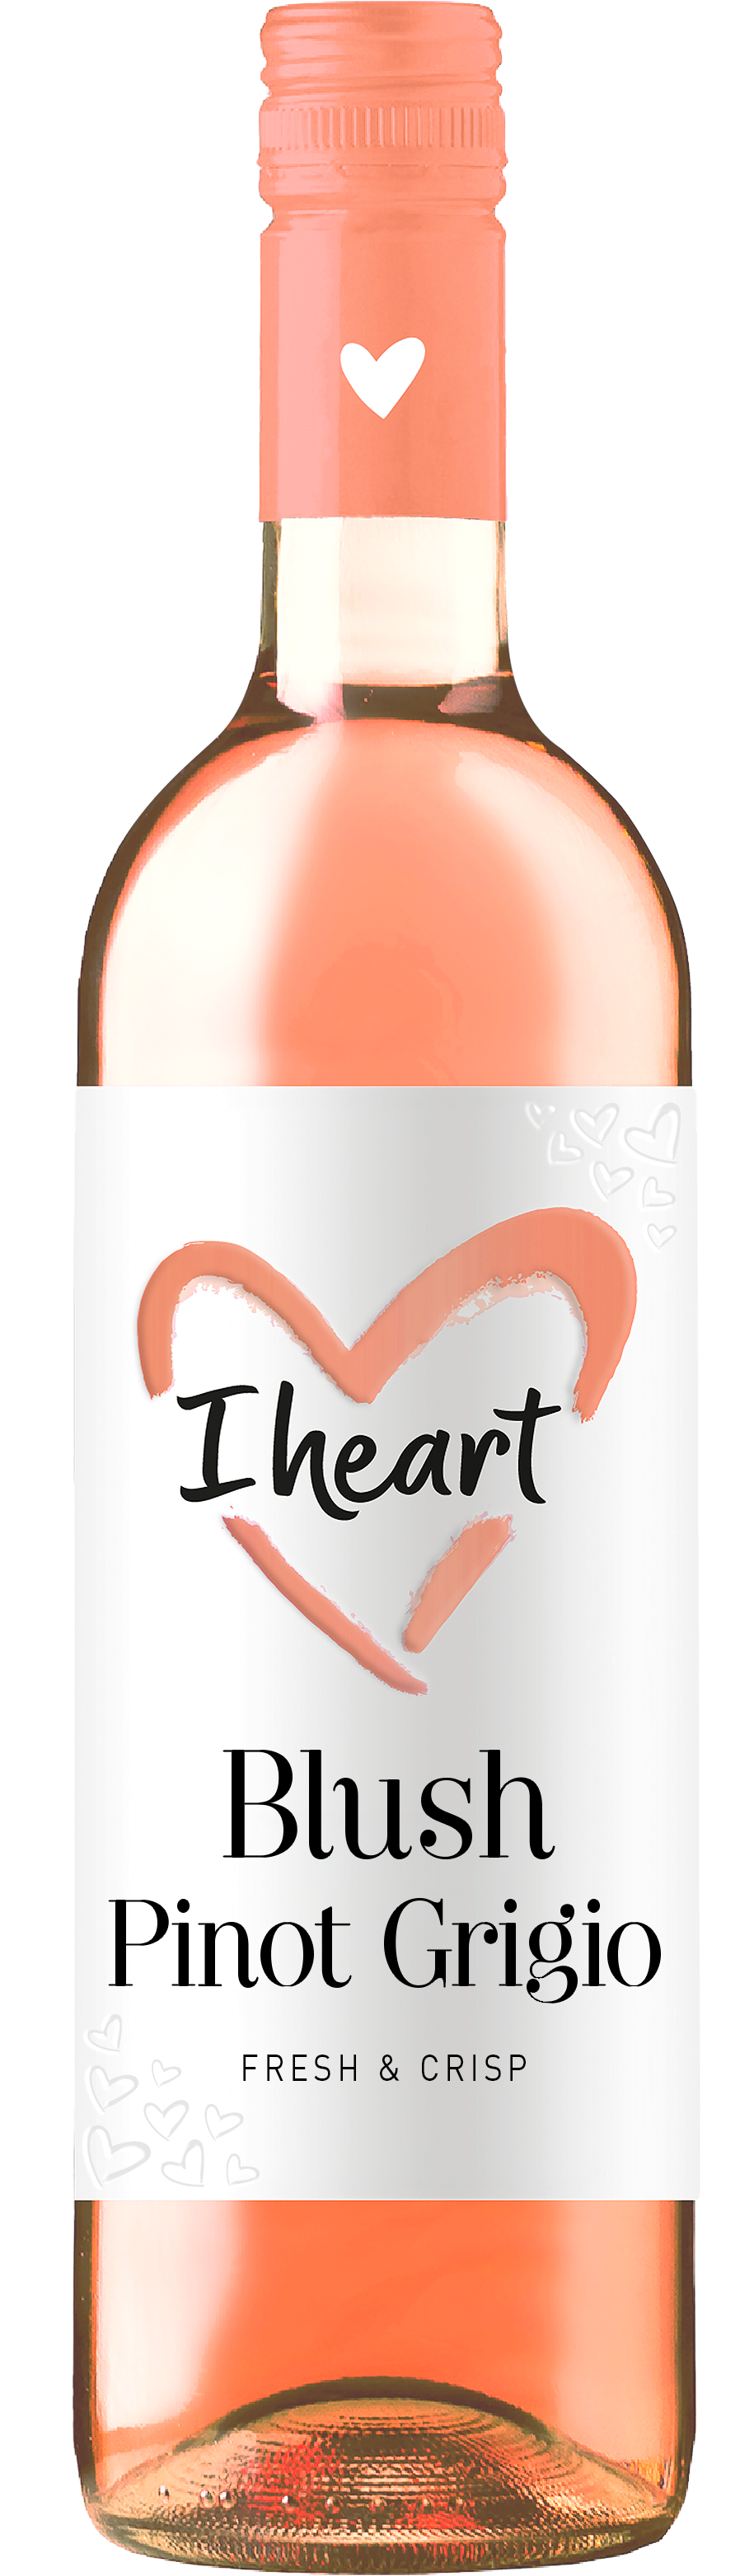 I heart wines - I Blanc Sauvignon heart